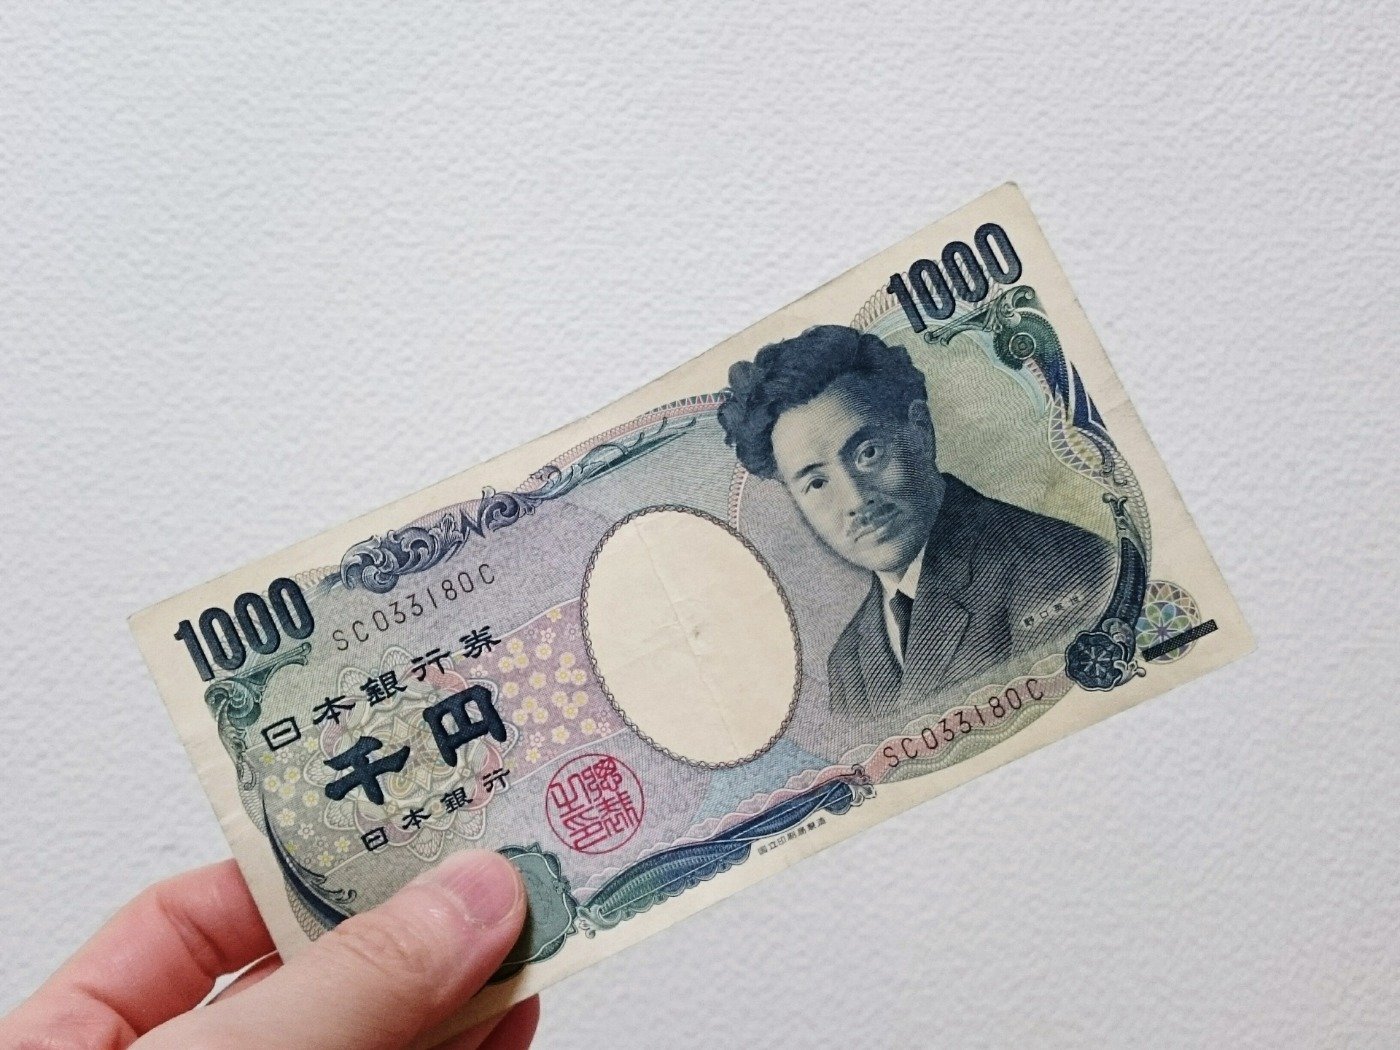 Tiền 1000 yên Nhật: Một tờ tiền 1000 yên Nhật có giá trị tinh túy của văn hóa và lịch sử Nhật Bản. Hãy xem hình ảnh của tờ tiền này để khám phá những chi tiết đặc trưng của tiền tệ này và những giá trị mà nó mang lại.